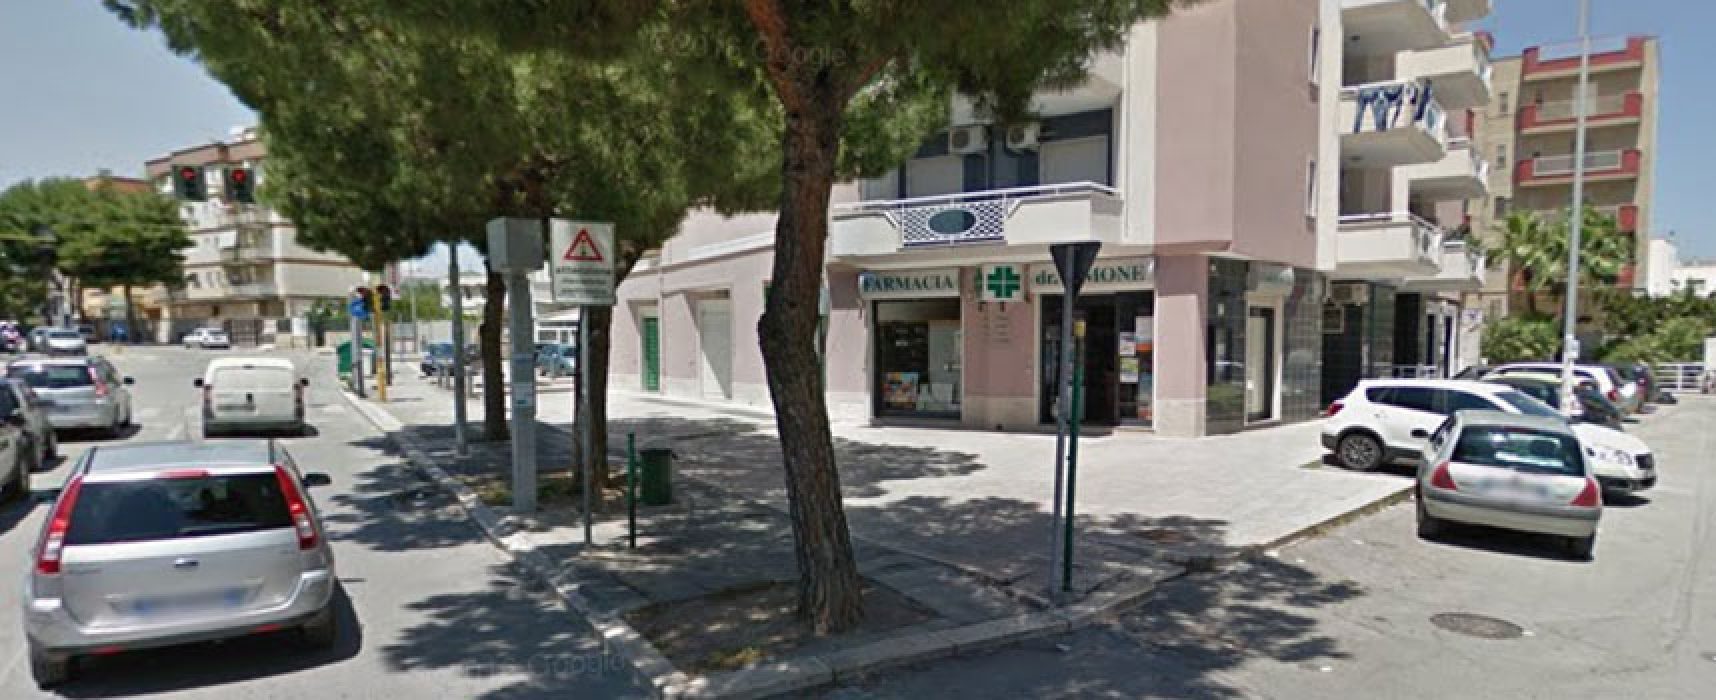 Rapina a mano armata in una farmacia nel quartiere San Pietro